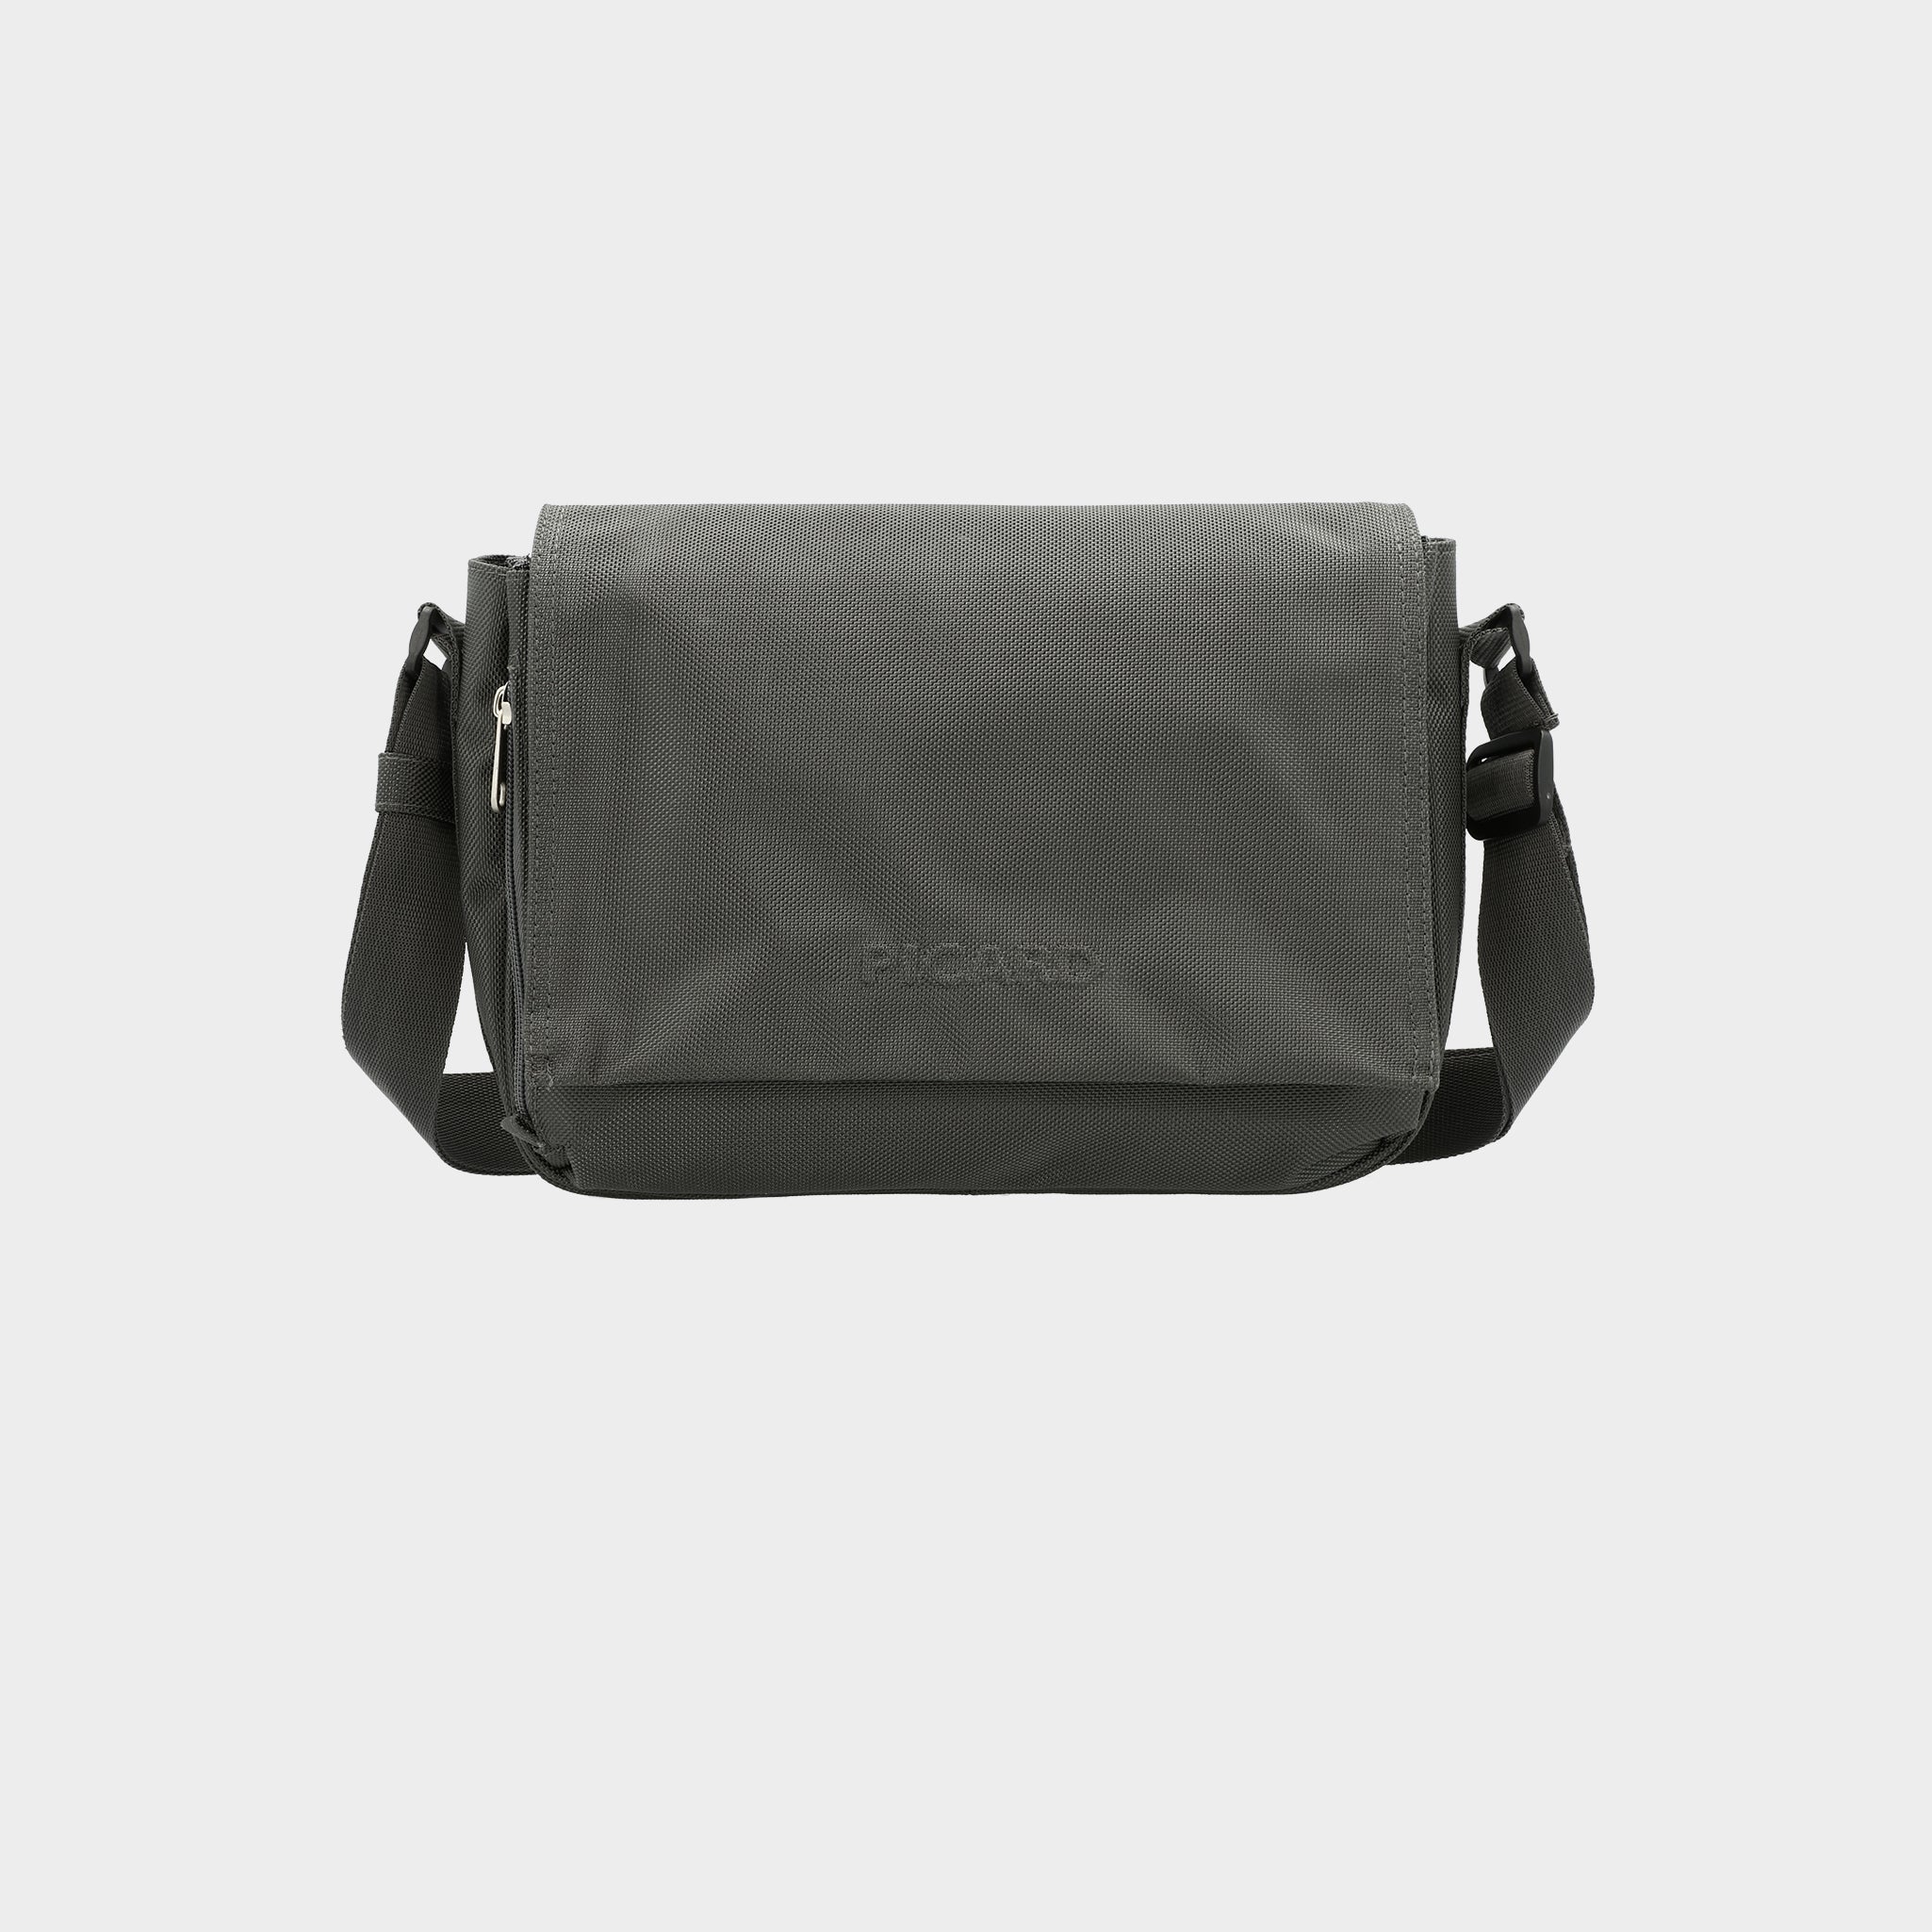 PICARD shoulder bag Really Shoulder Bag Black